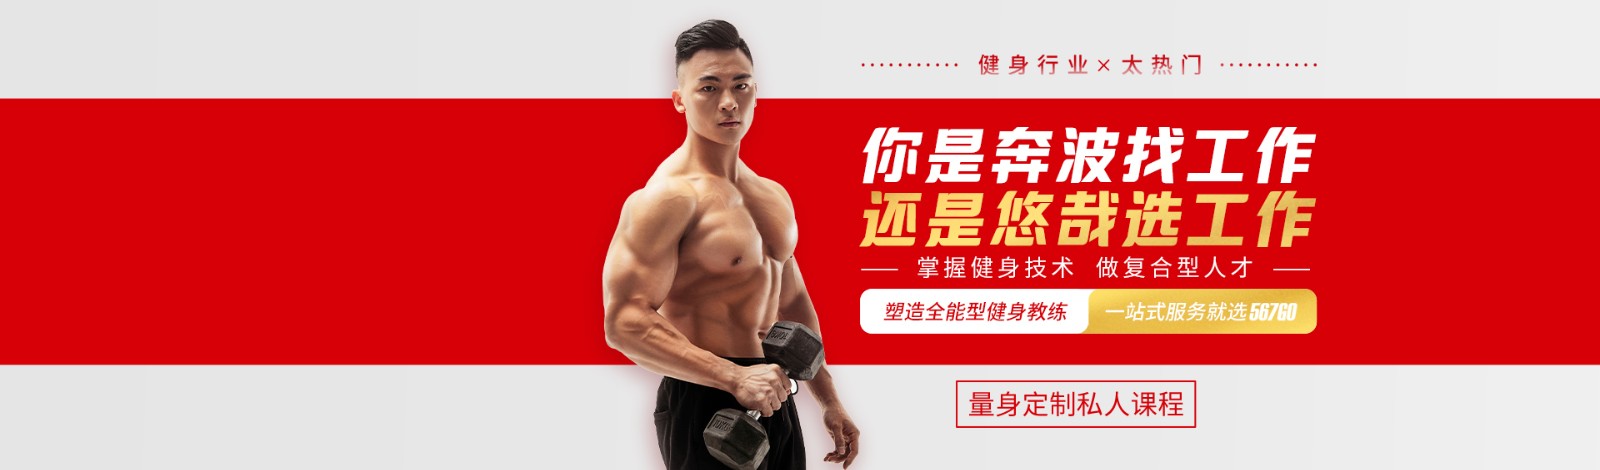 上海567GO健身学院 横幅广告